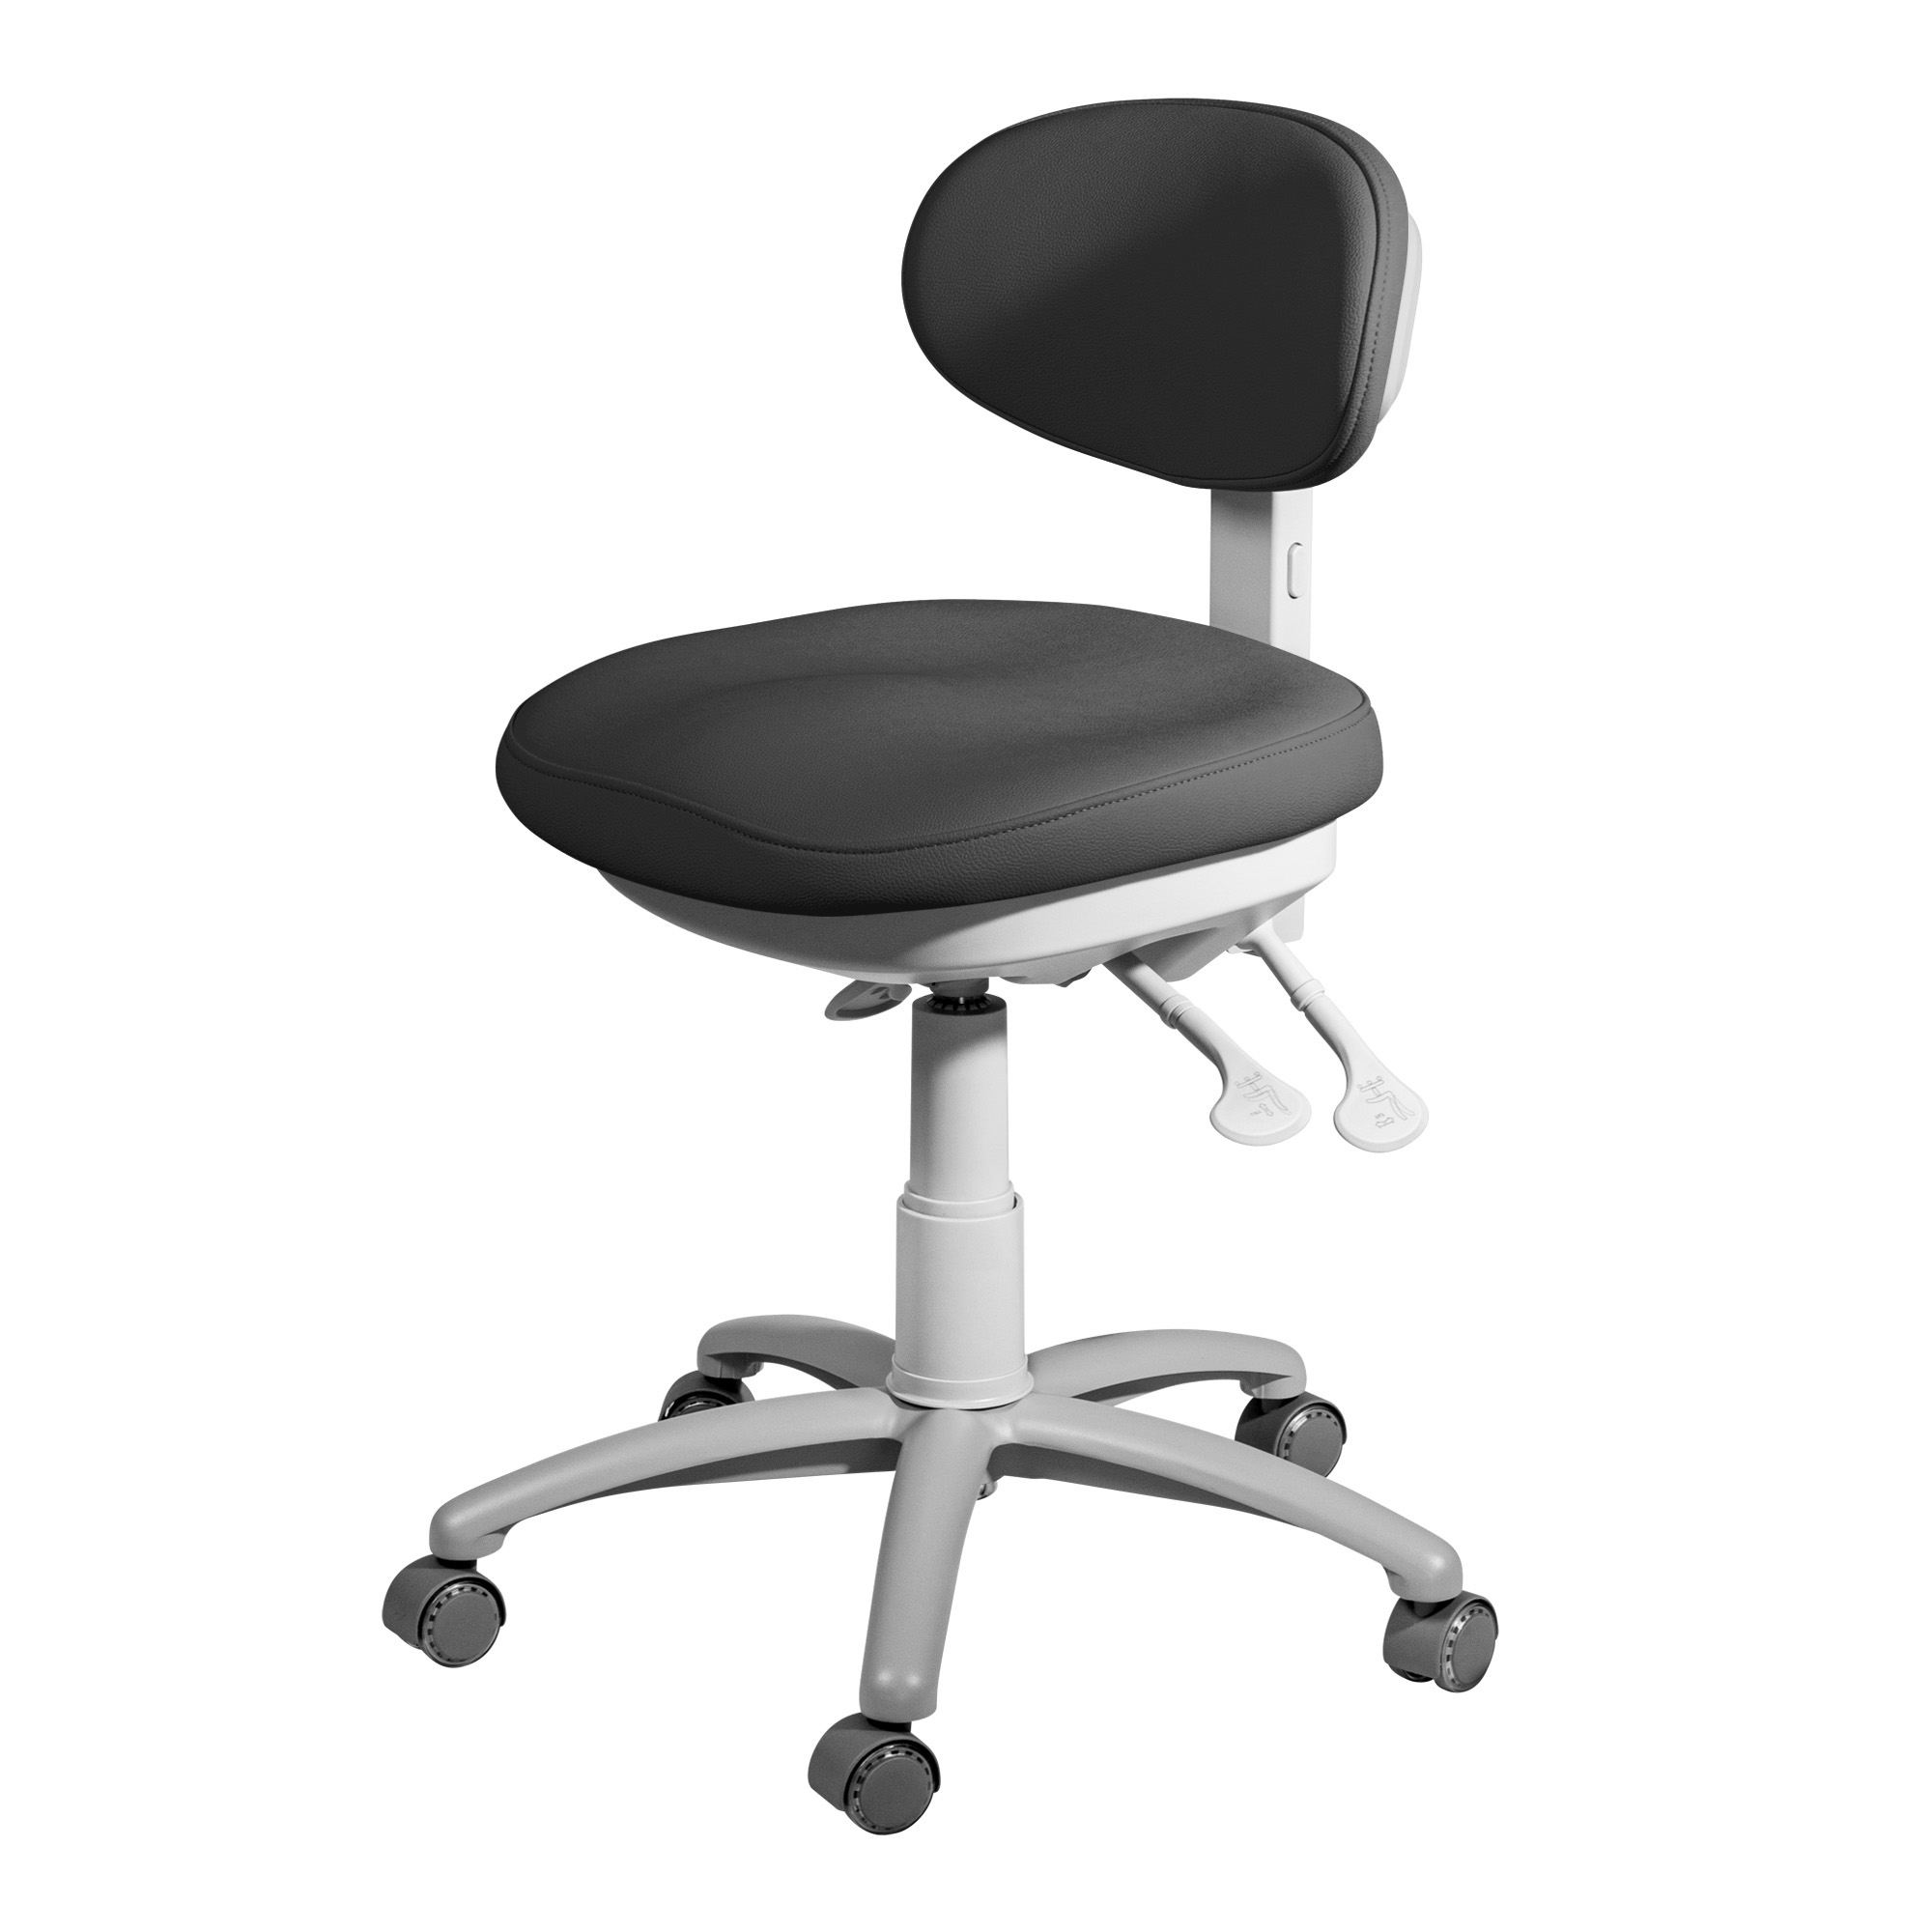 Moon - Professioneller Stuhl mit ergonomischem Sitz und Rückenlehne